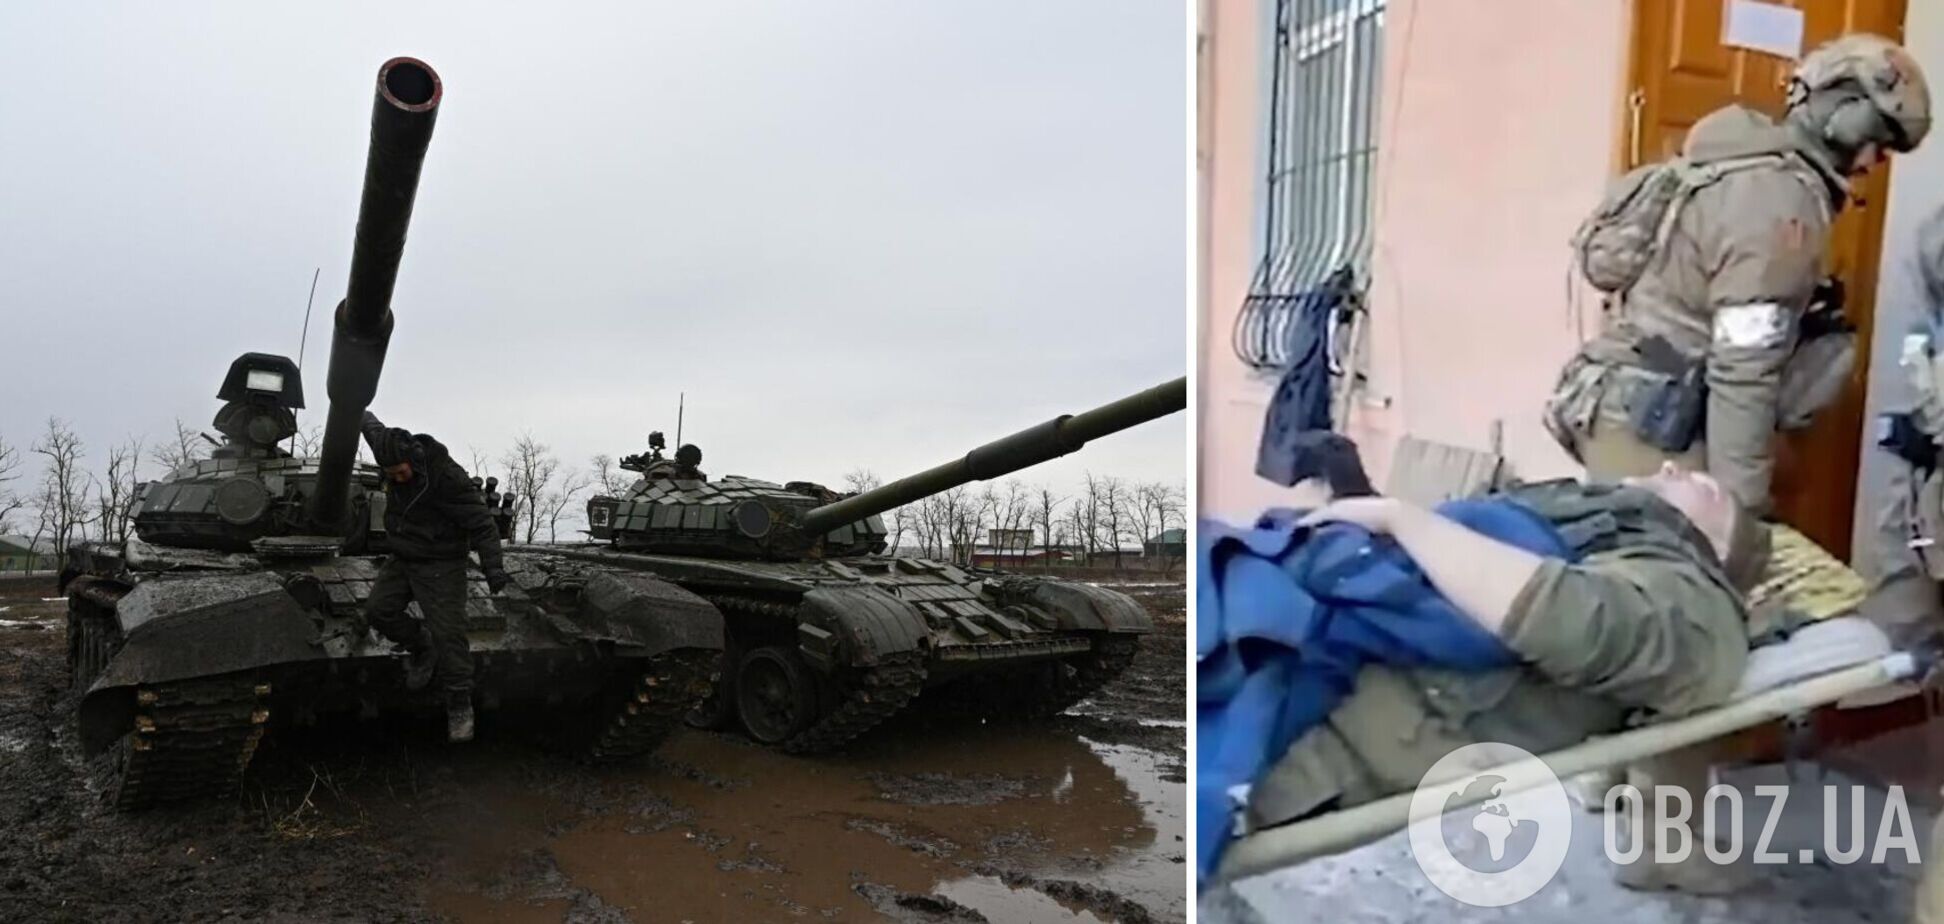 'Угробил' бригаду россиян: выяснились детали о командире РФ, которого оккупант переехал танком под Киевом. Фото и видео